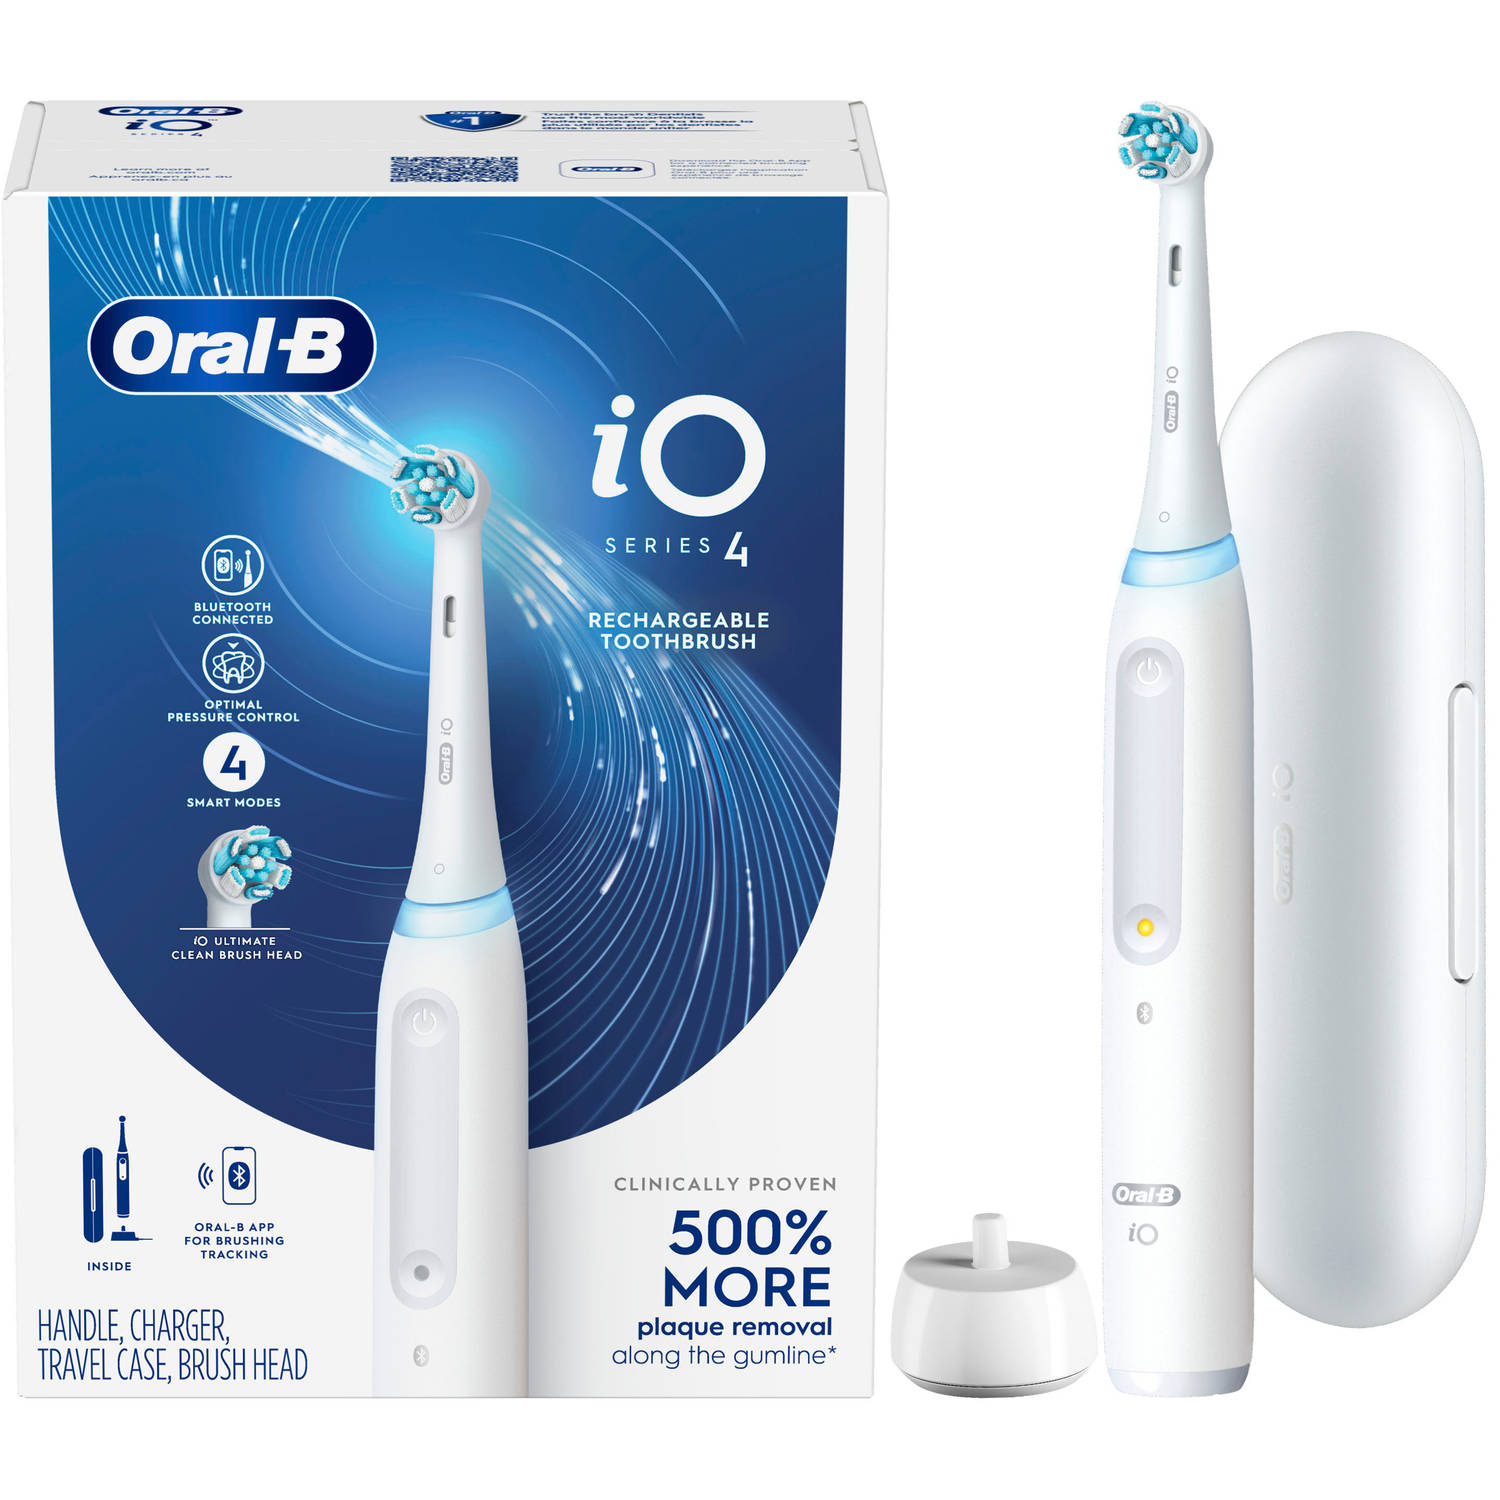 Braun Oral-B iO 4 Elektrische Tandenborstel Wit